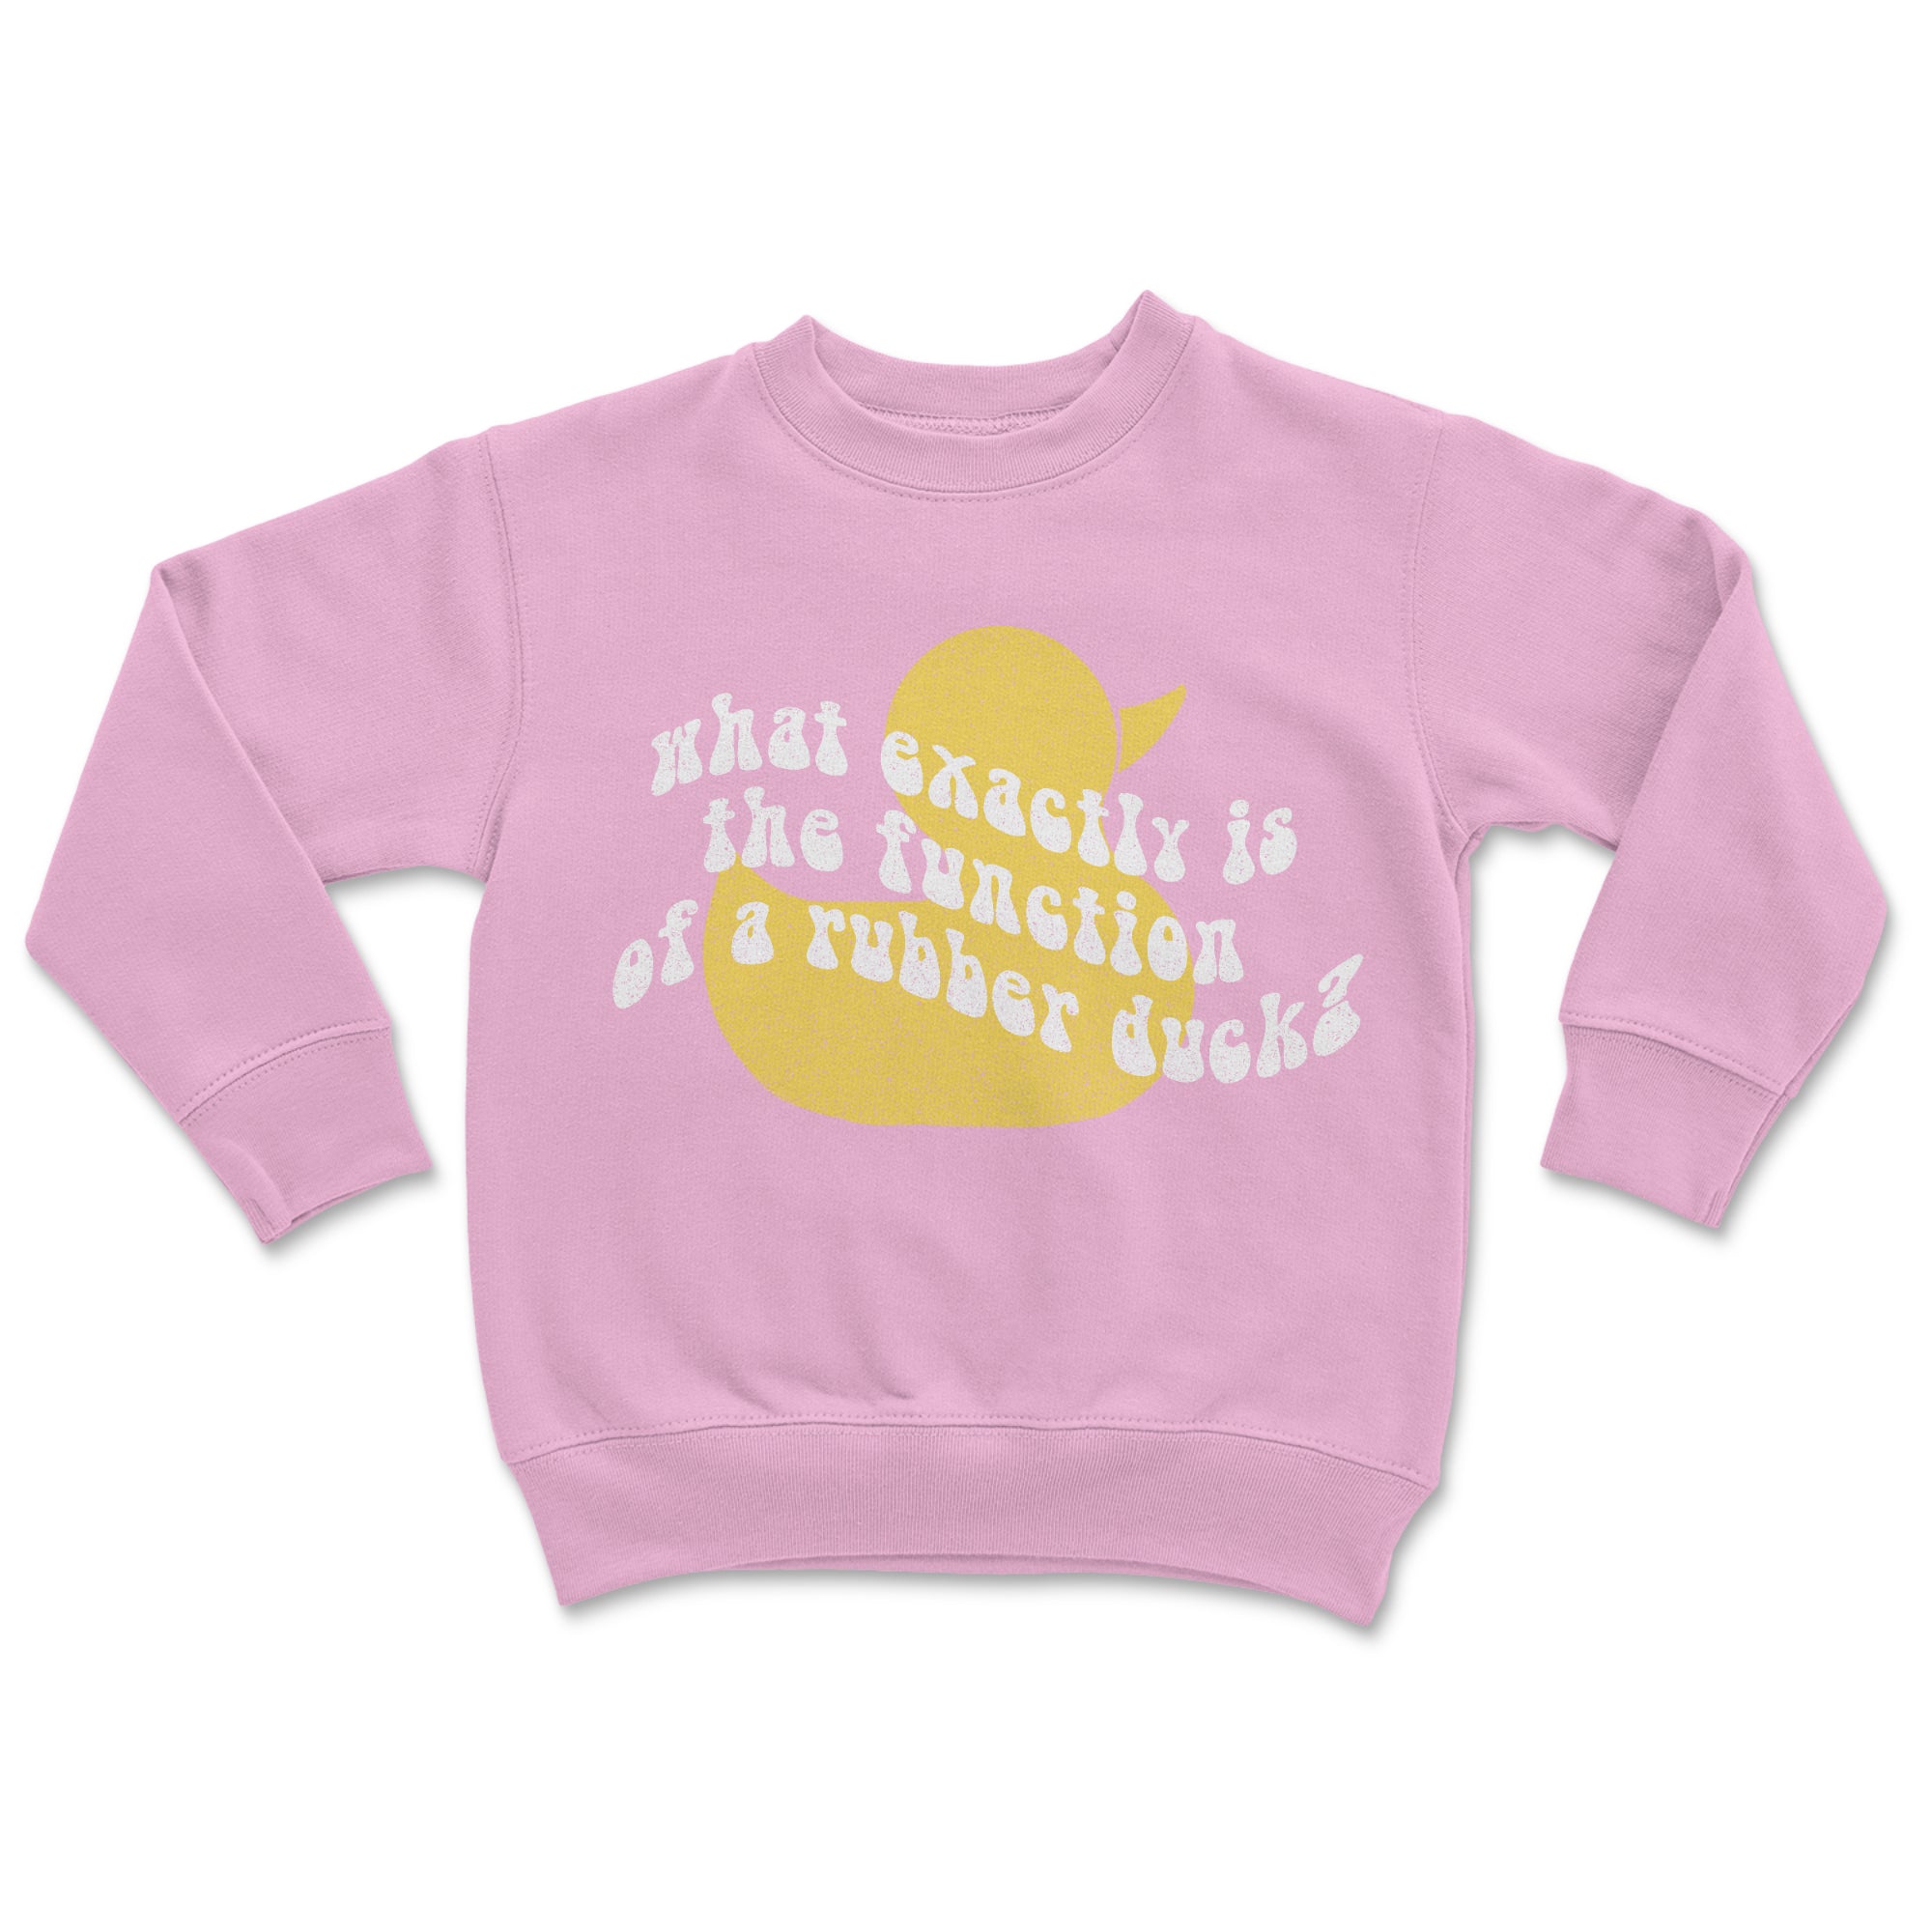 The Rubber Duck - Toddler Sweatshirt